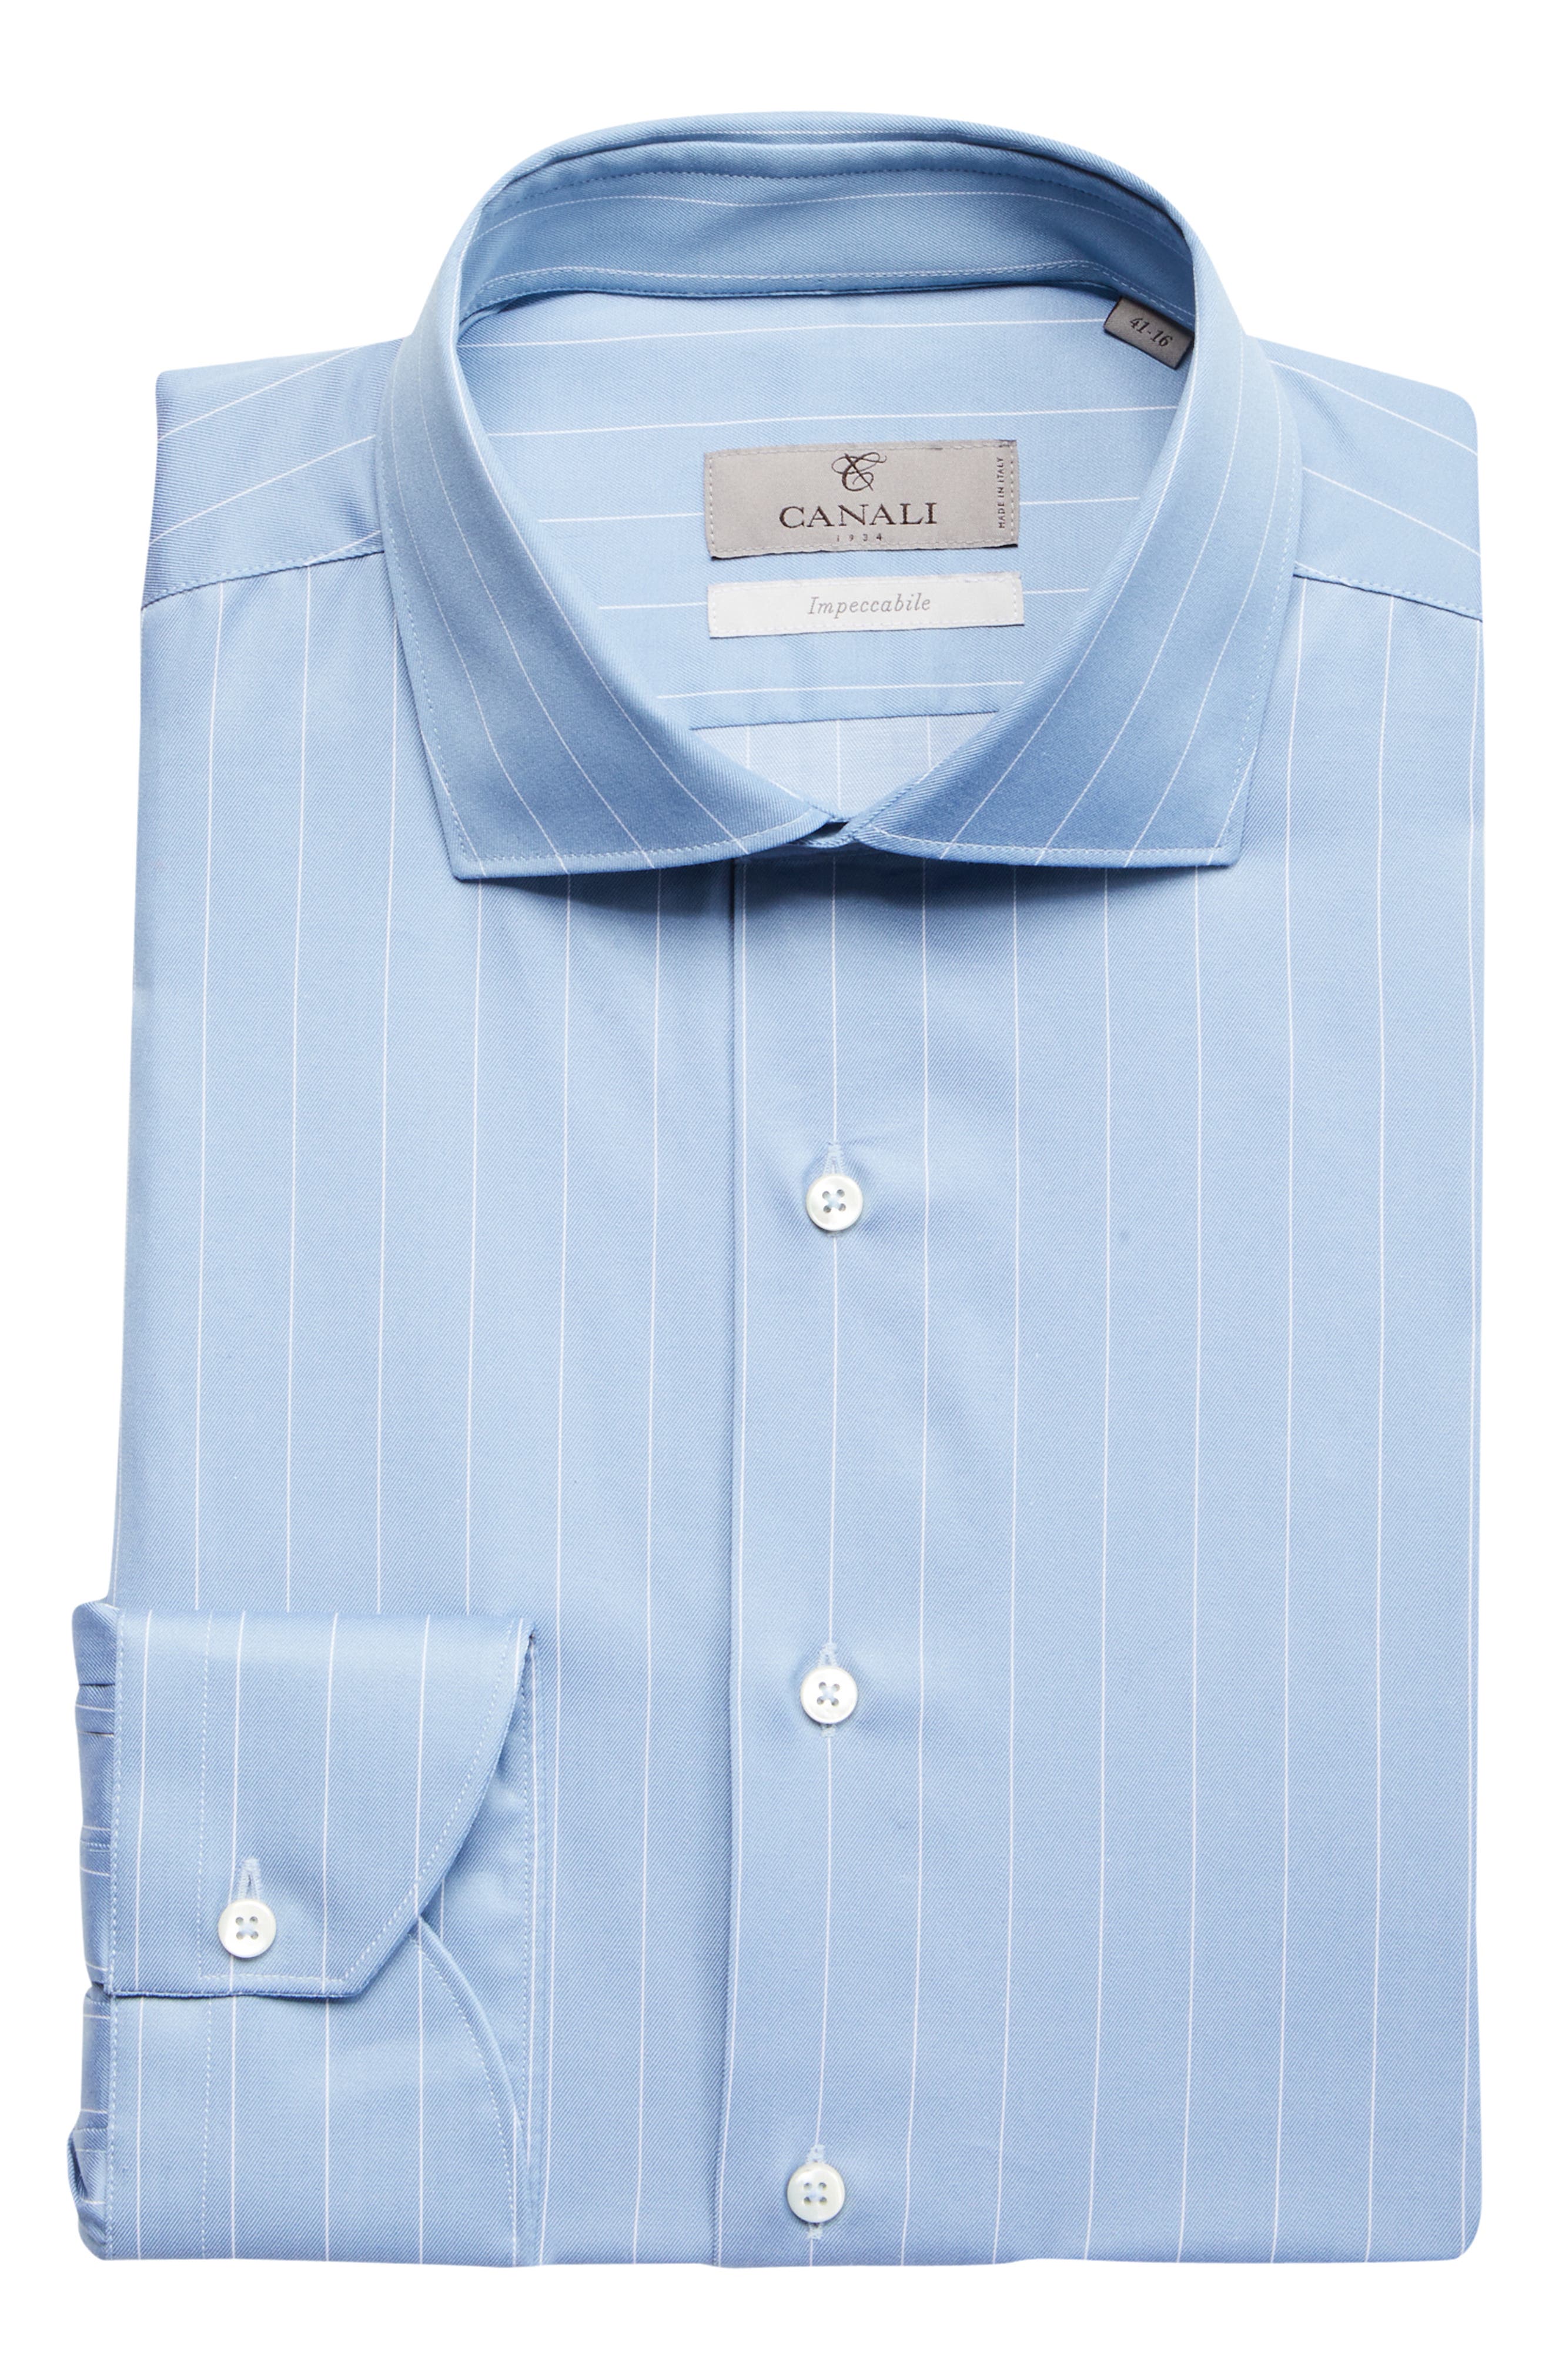 Canali Men's Impeccabile Stripe Dress Shirt in Blue